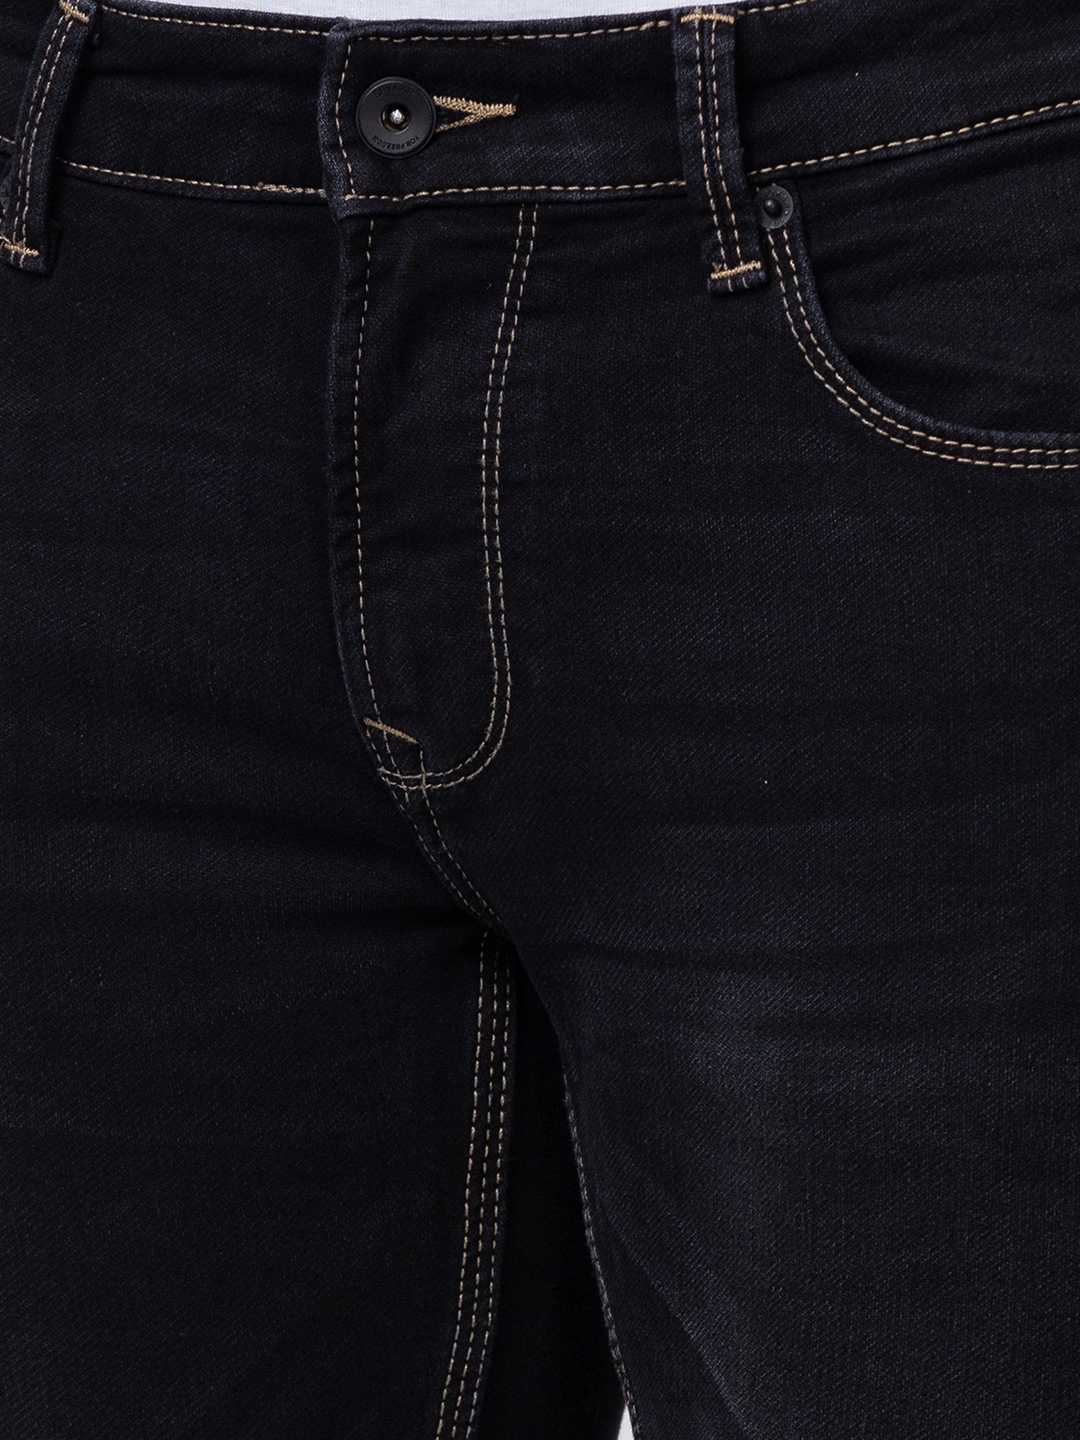 spykar | Men's Black Cotton Solid Jeans 4